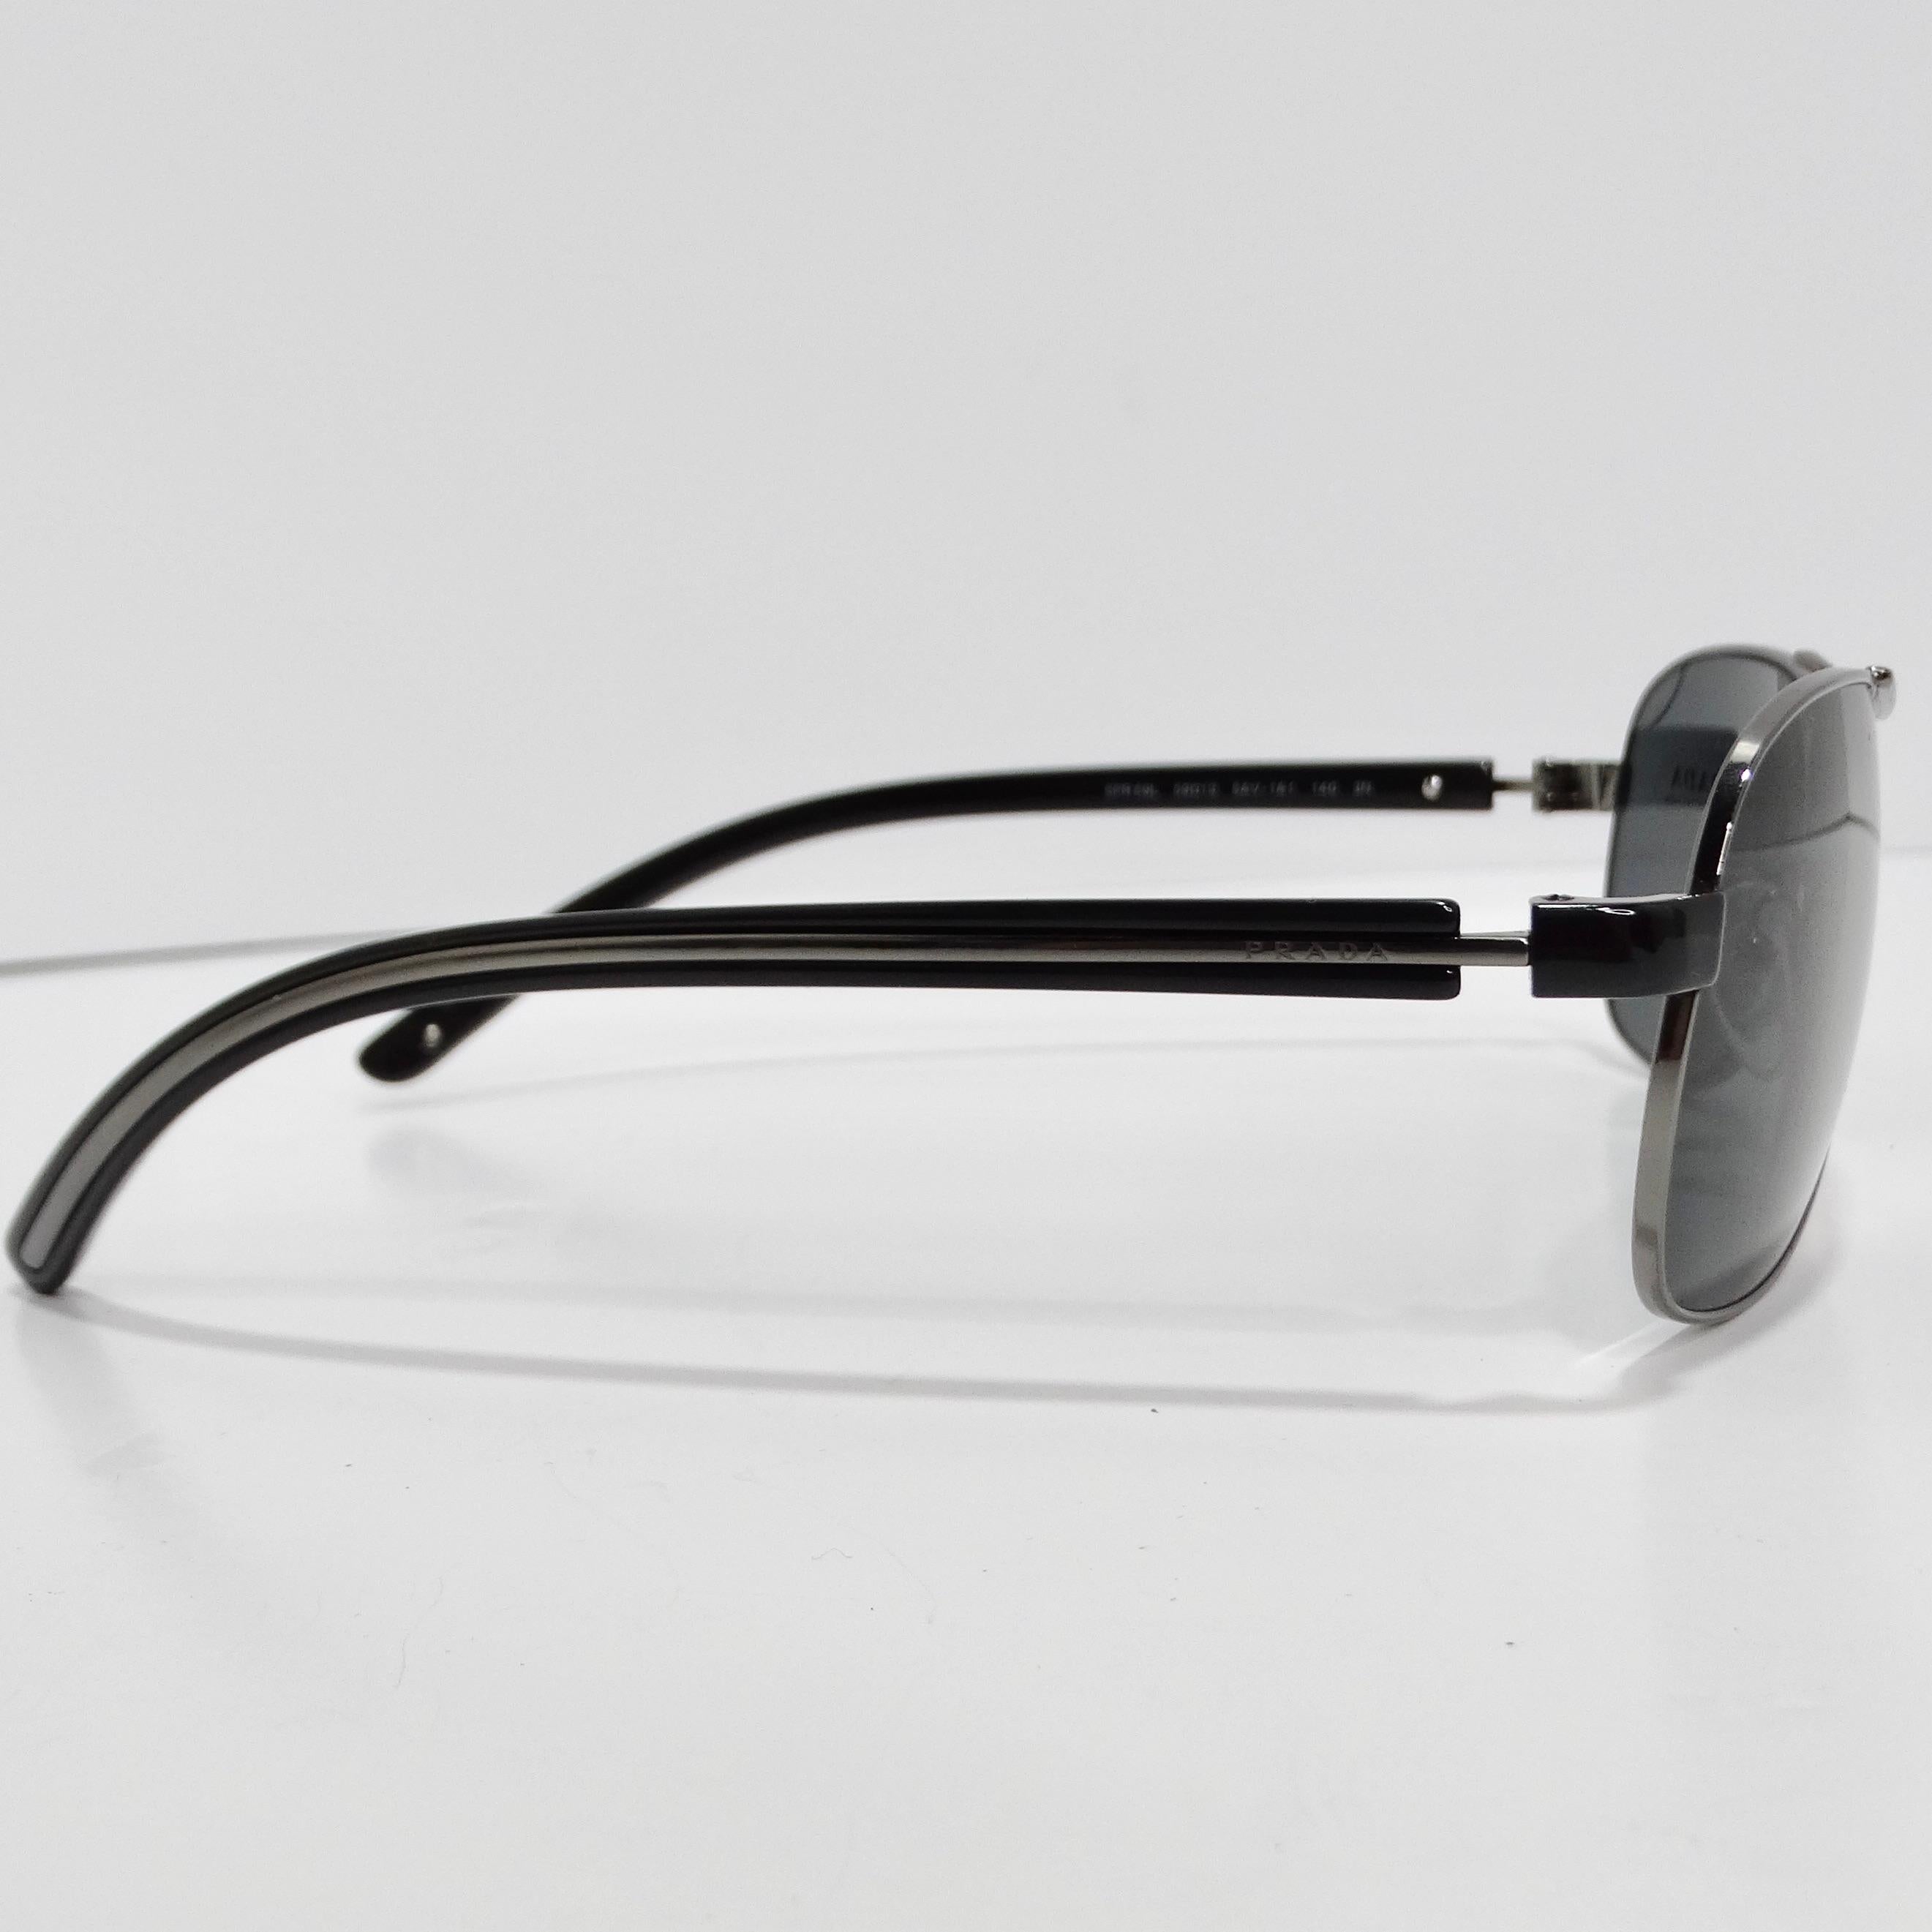 Les lunettes de soleil Aviator argenté Prada des années 1990 sont une pièce intemporelle qui respire la sophistication classique. Ces lunettes de soleil arborent le style aviateur emblématique avec de fines branches argentées, complétées par des